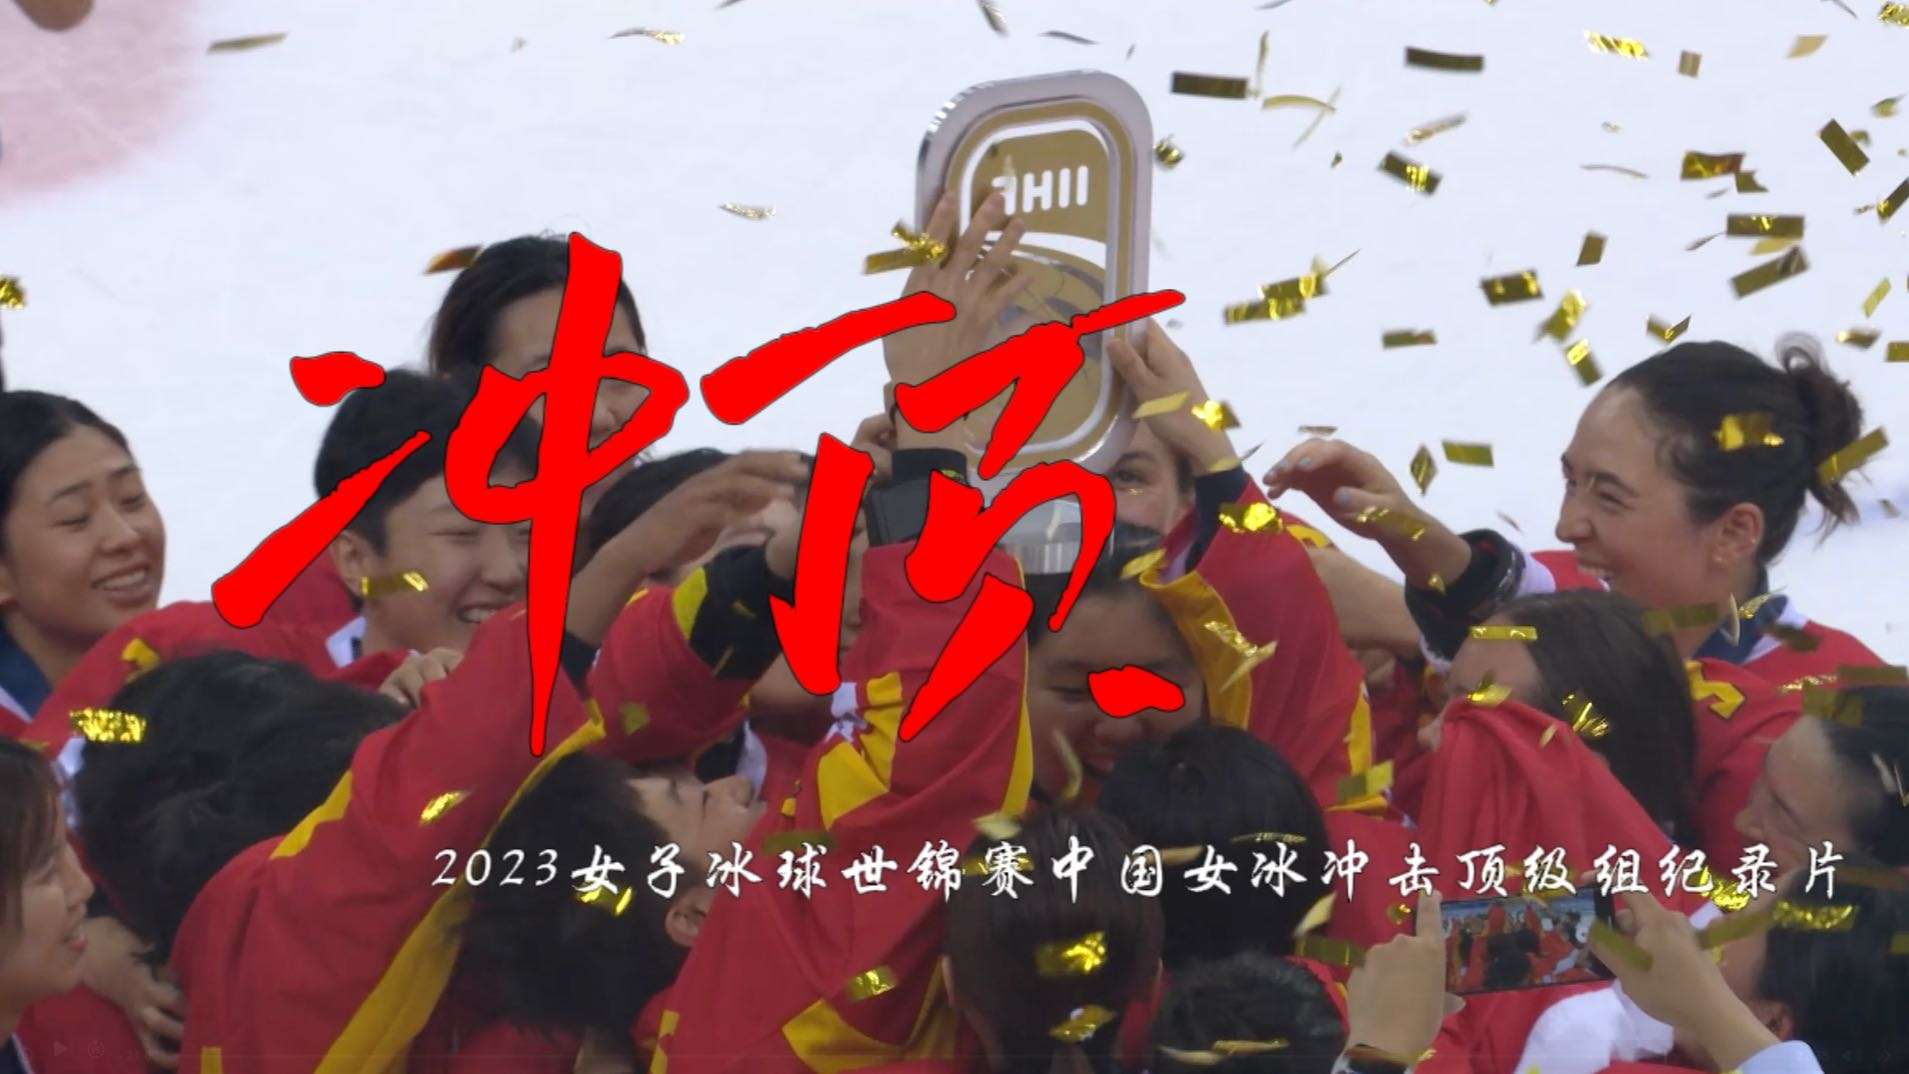 《冲顶》——2023女子冰球世锦赛中国队冲击顶级组纪录片